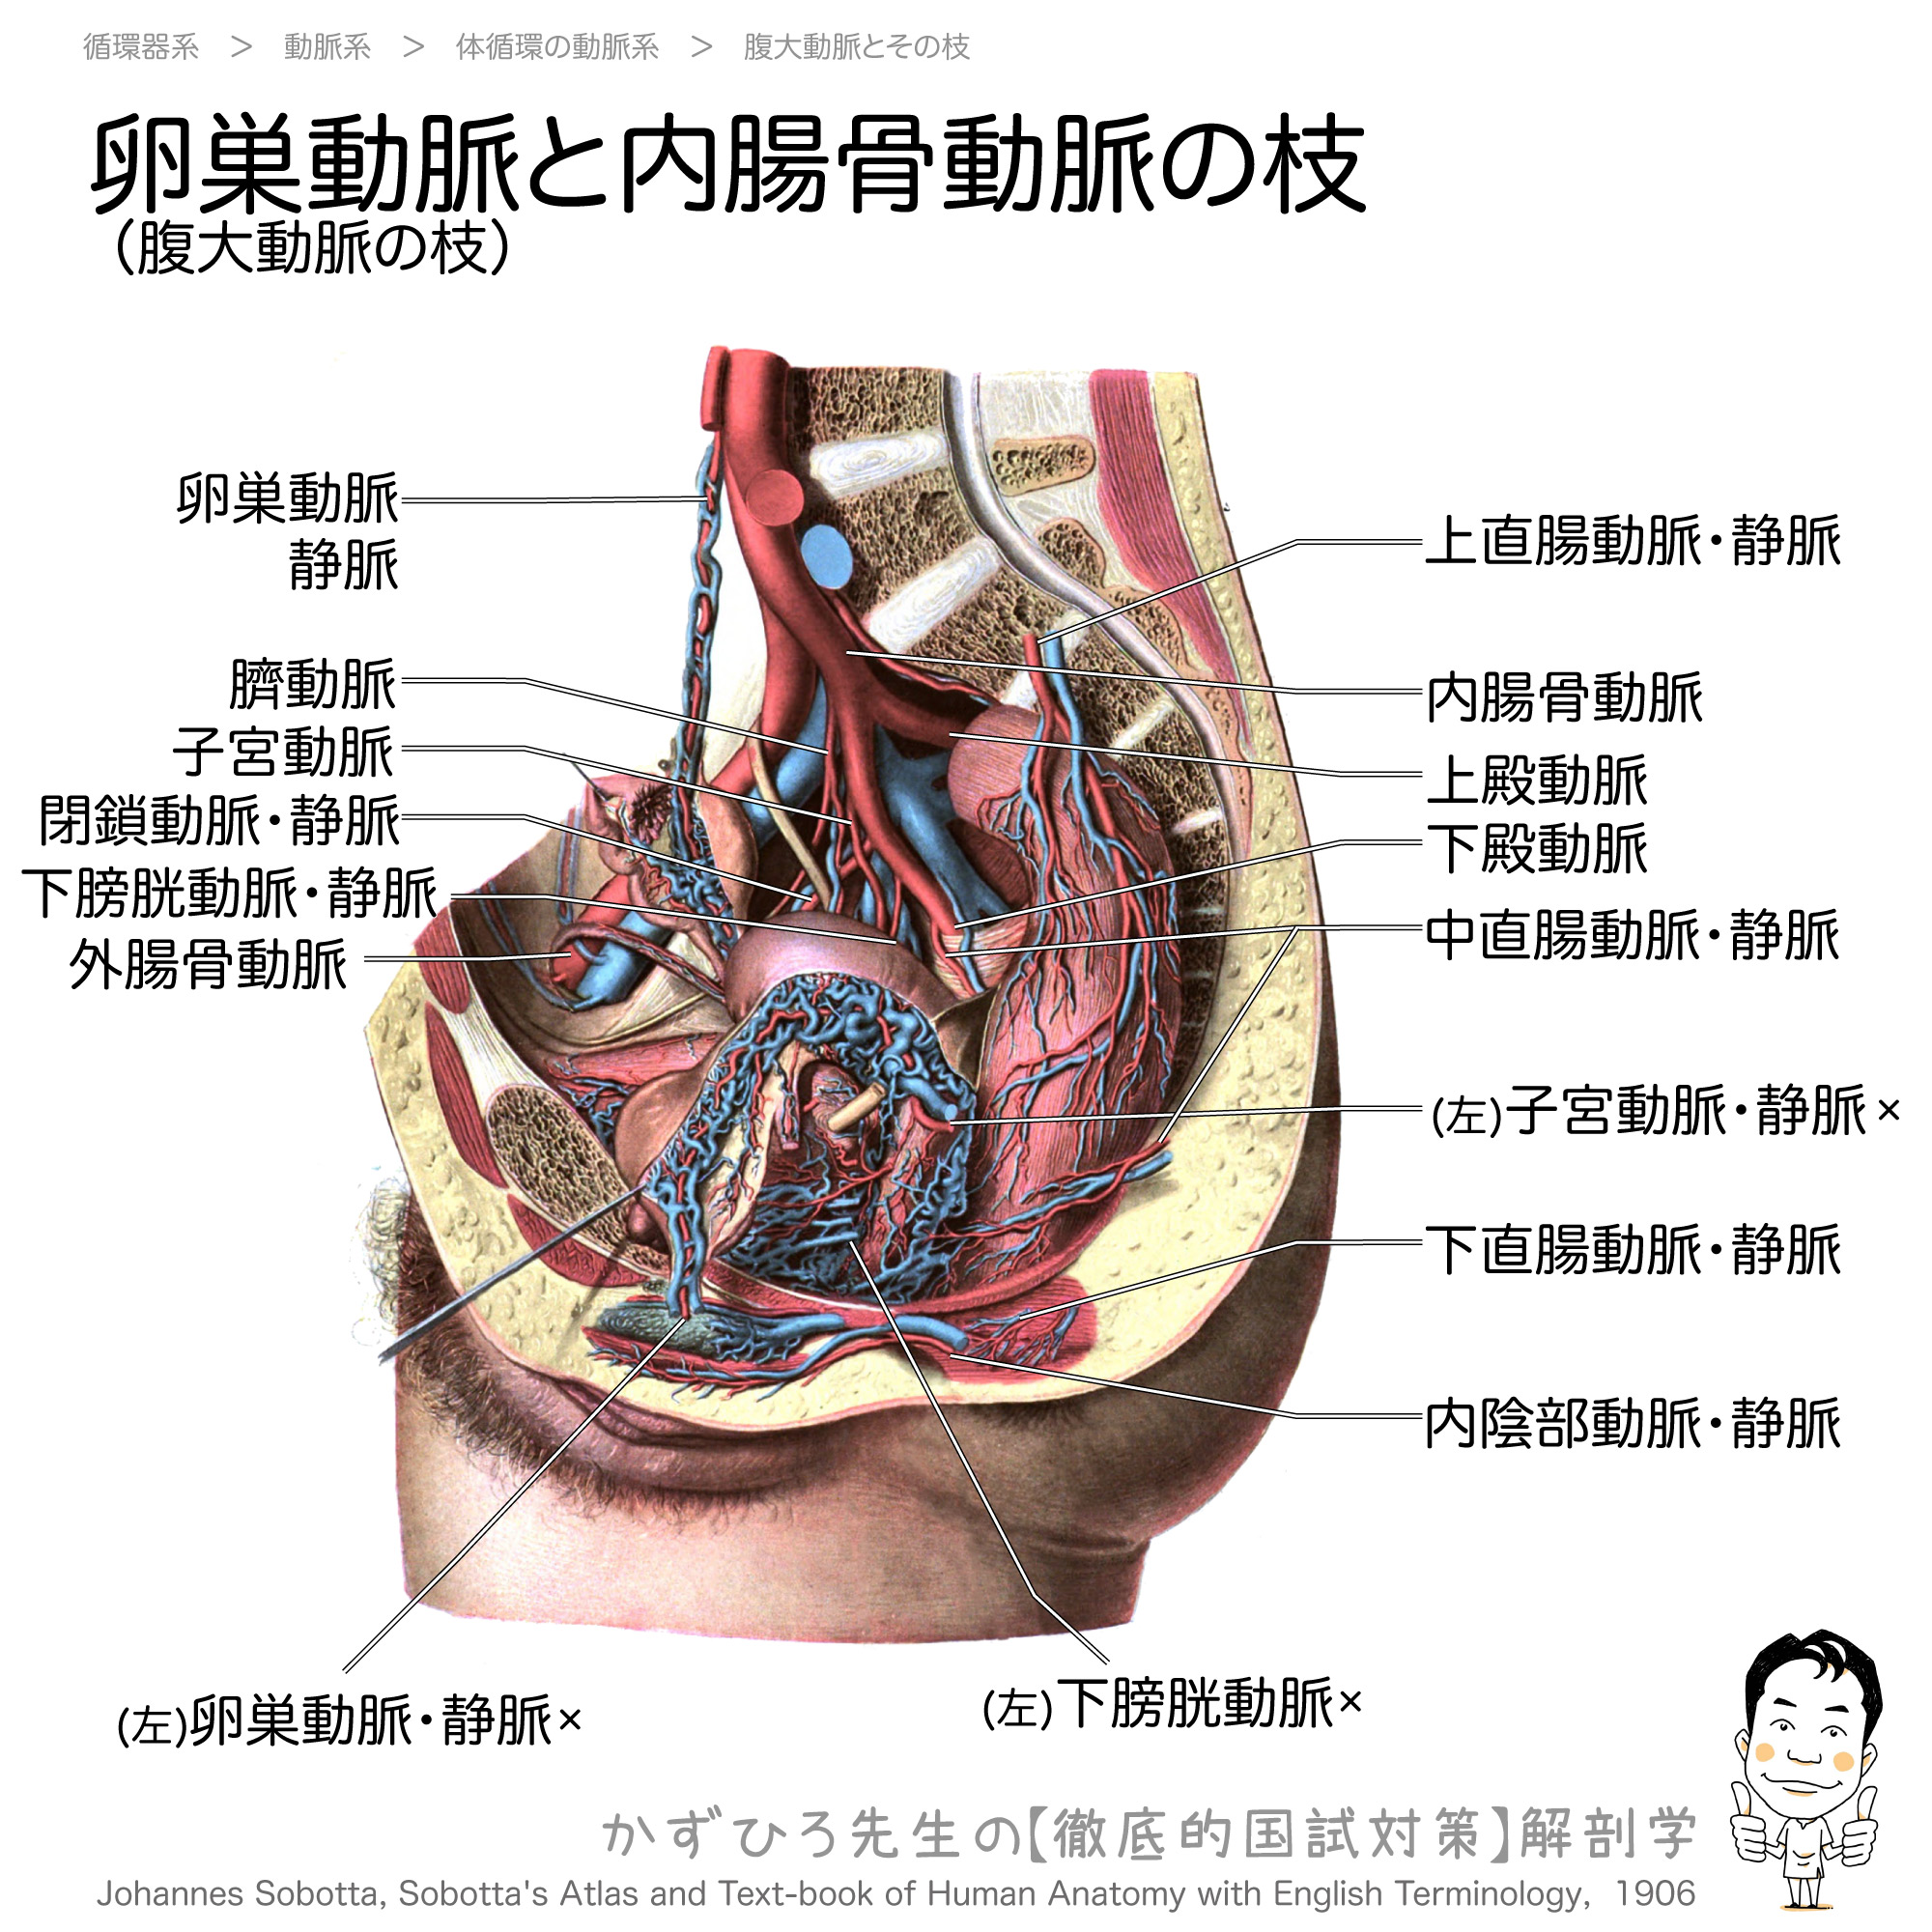 卵巣動脈は腹大動脈の枝 徹底的解剖学